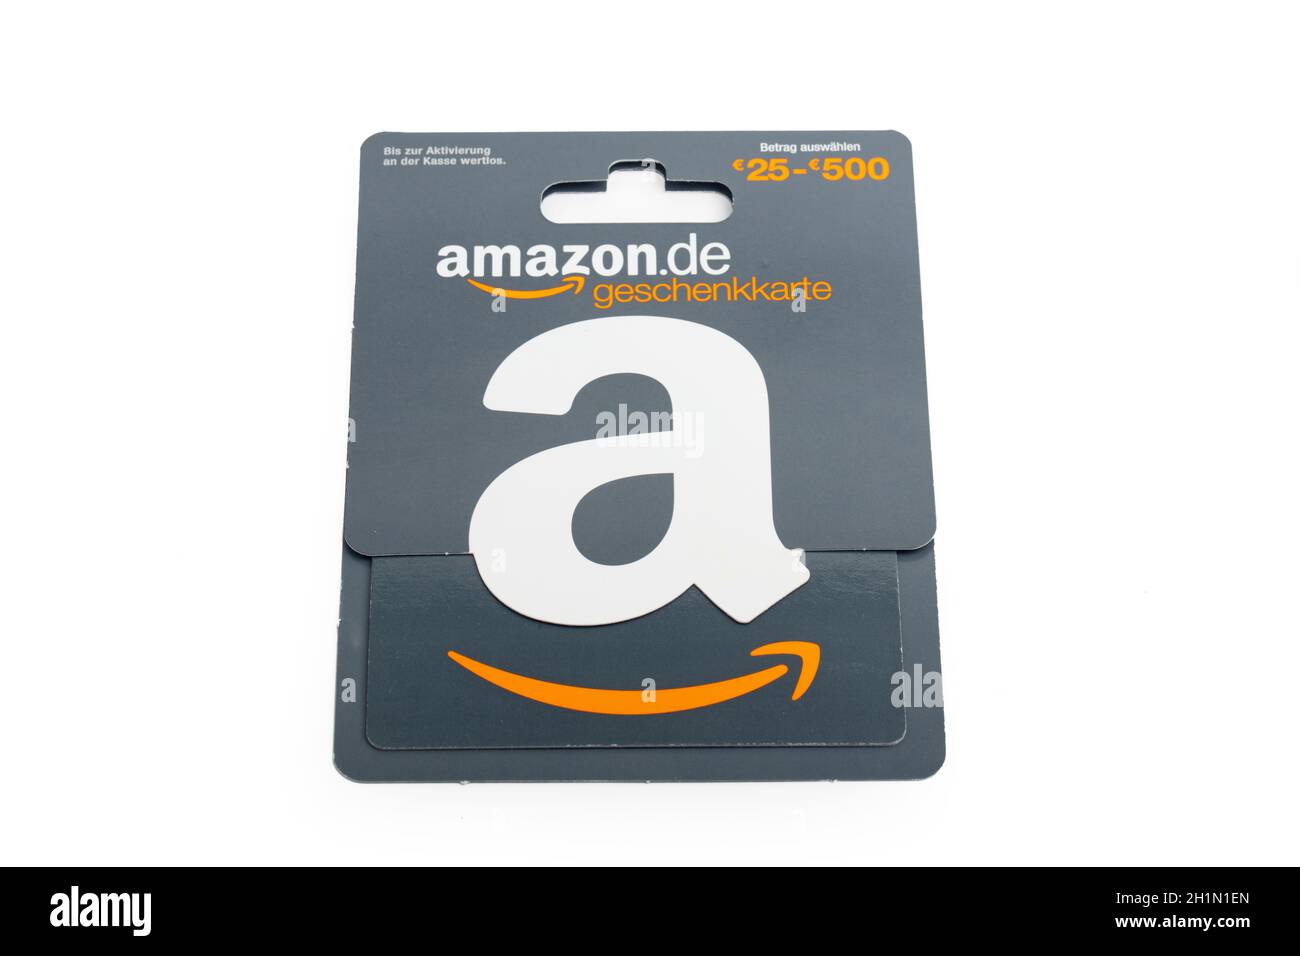 Amazon gift card Banque d'images détourées - Alamy